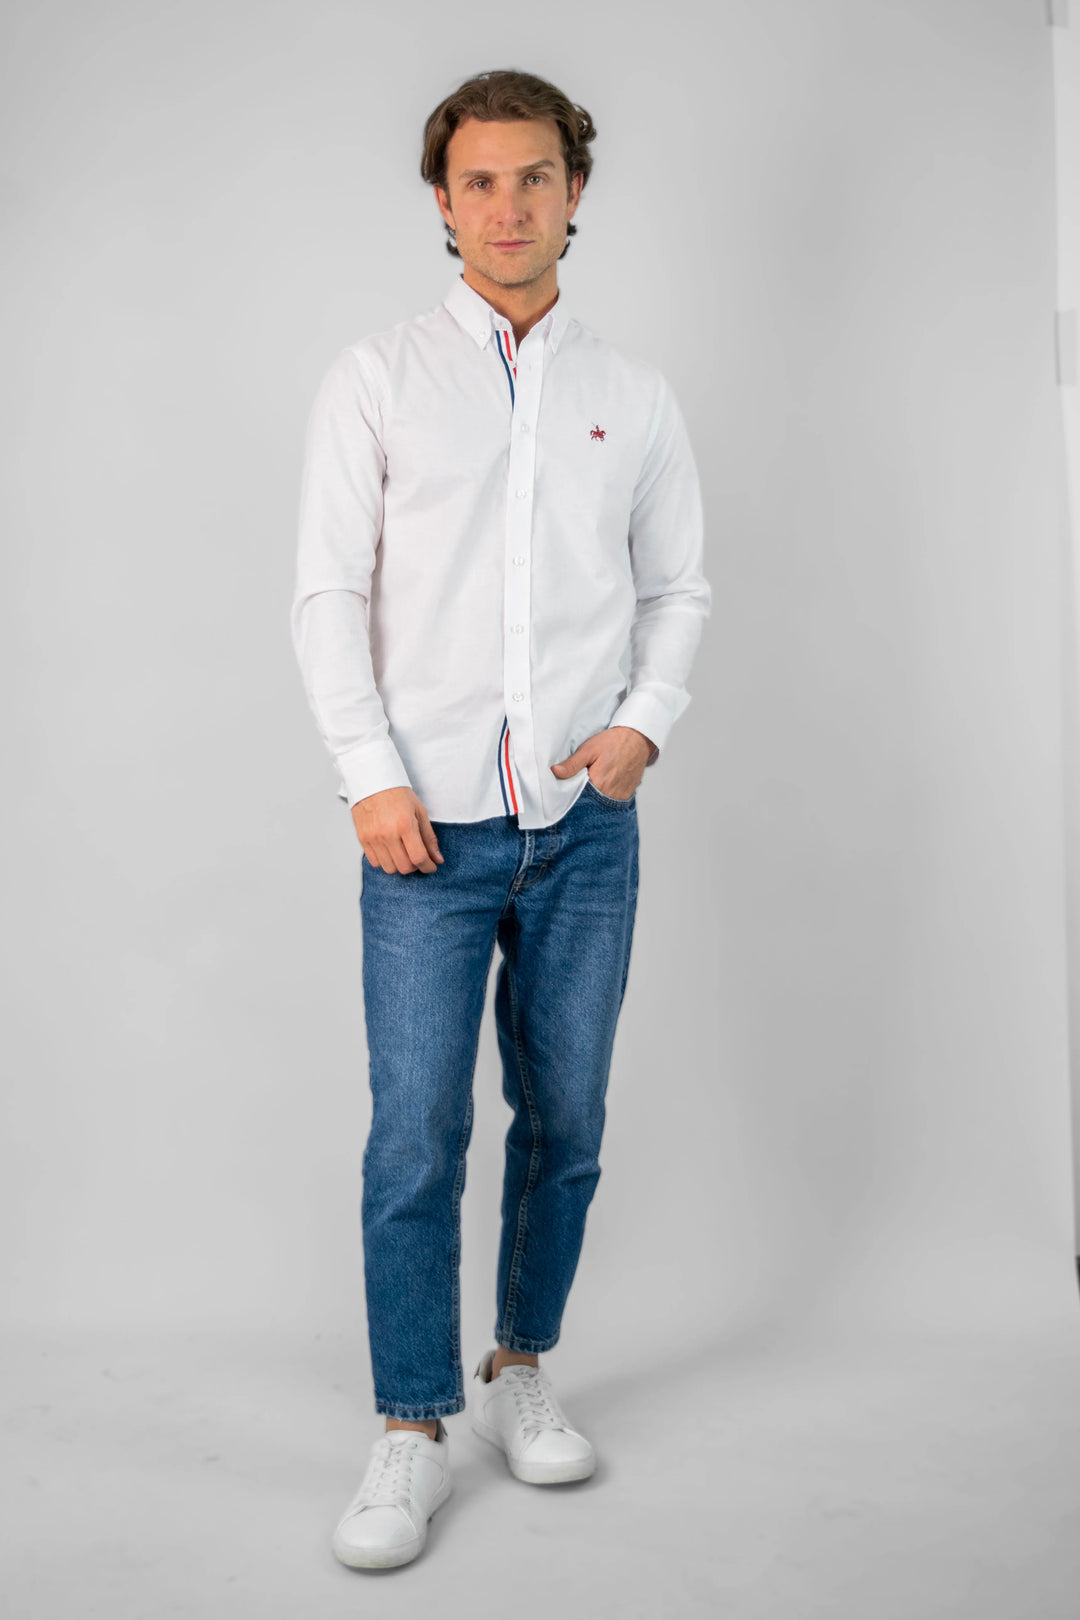 Modelo masculino de pie vistiendo la camisa manga larga France, combinandola con unos jeans y unos zapatos blancos casuales. Camisa ideal para looks formales e informales.